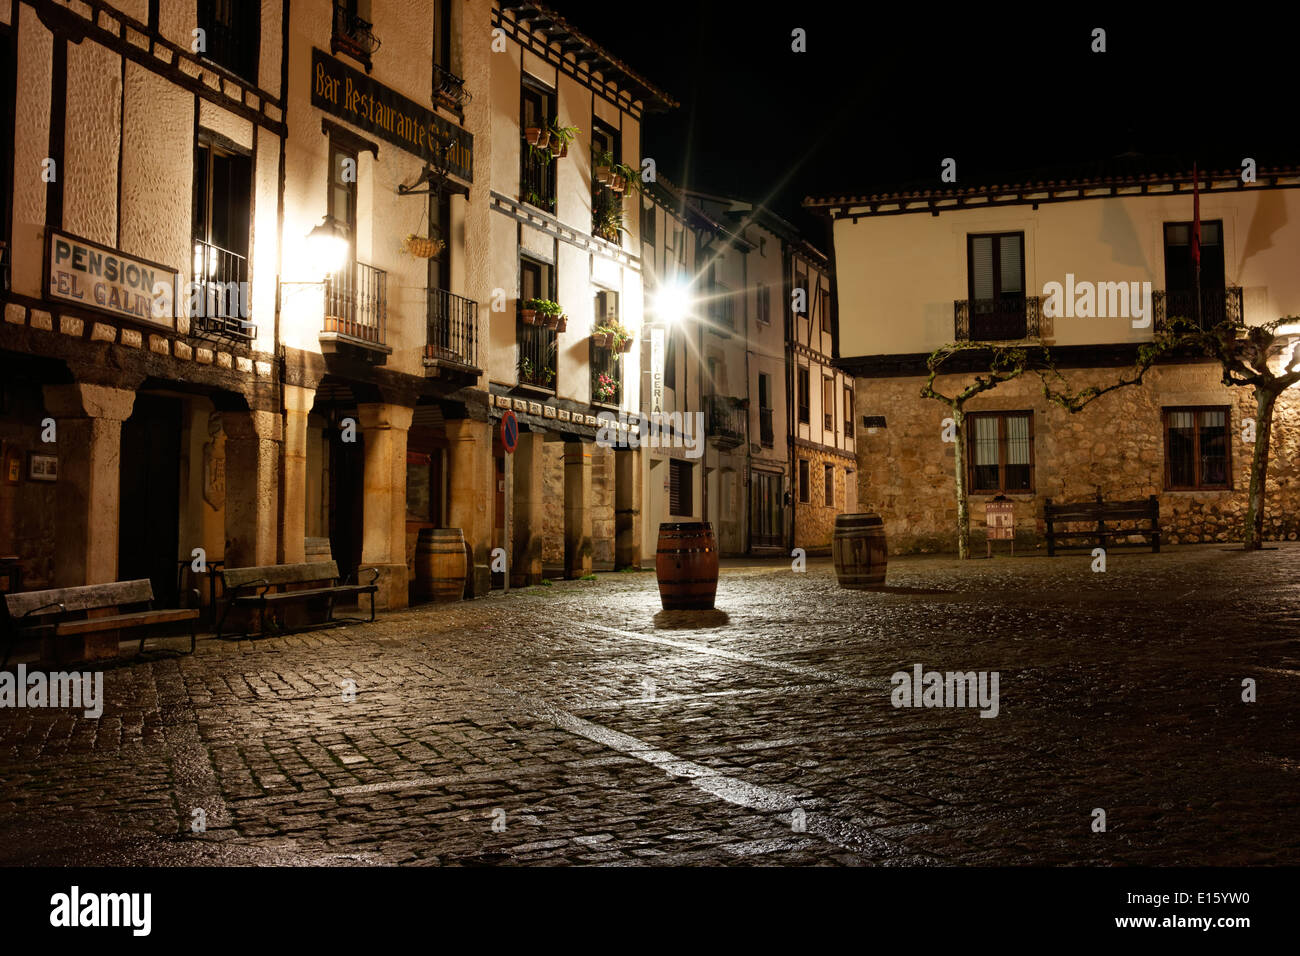 The town of Covarrubias, Burgos, Spain Stock Photo